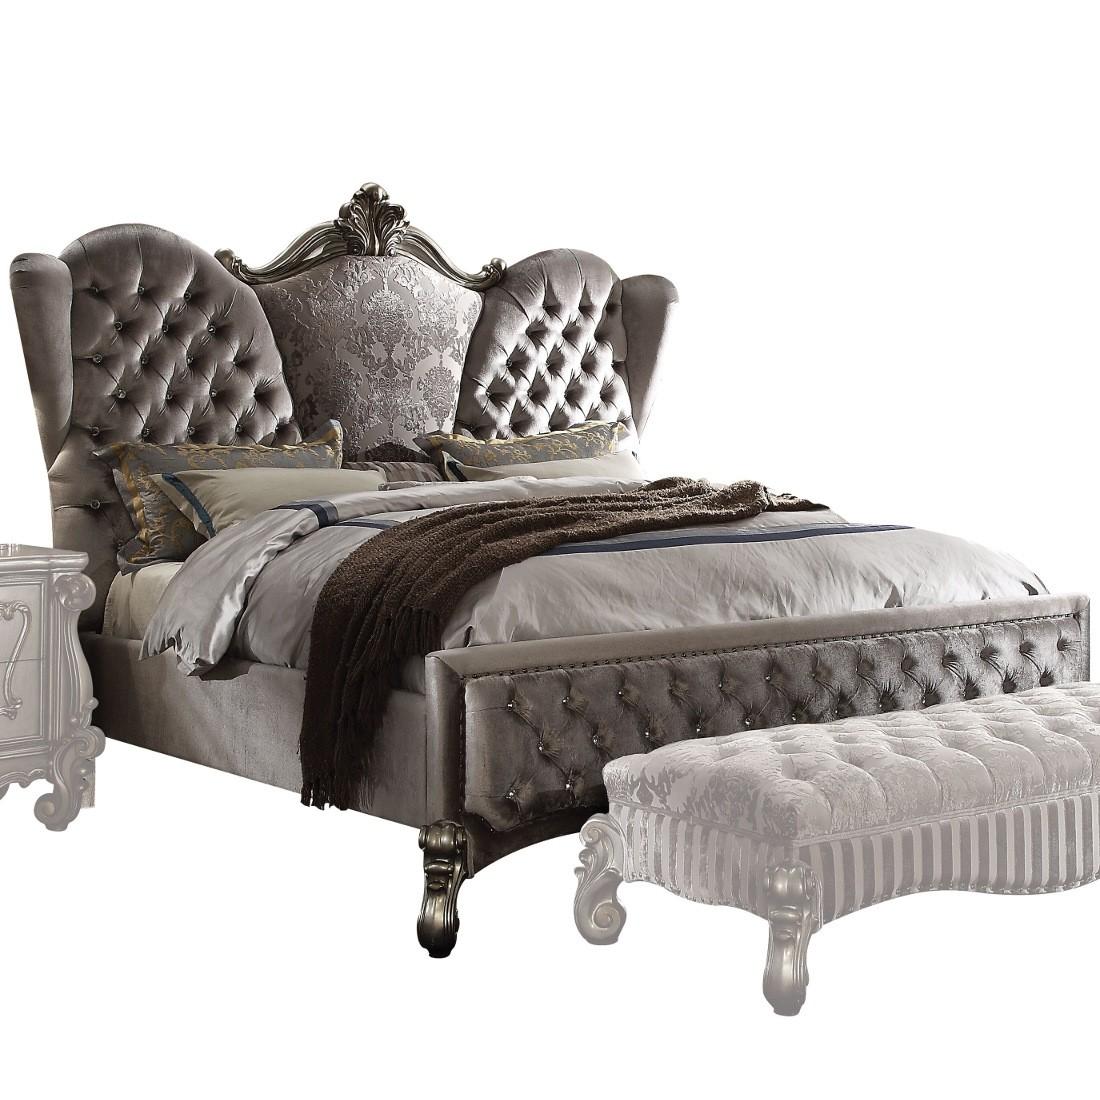 

    
Doline King Tufted Upholstered Bedroom Set 5Pcs Classic
